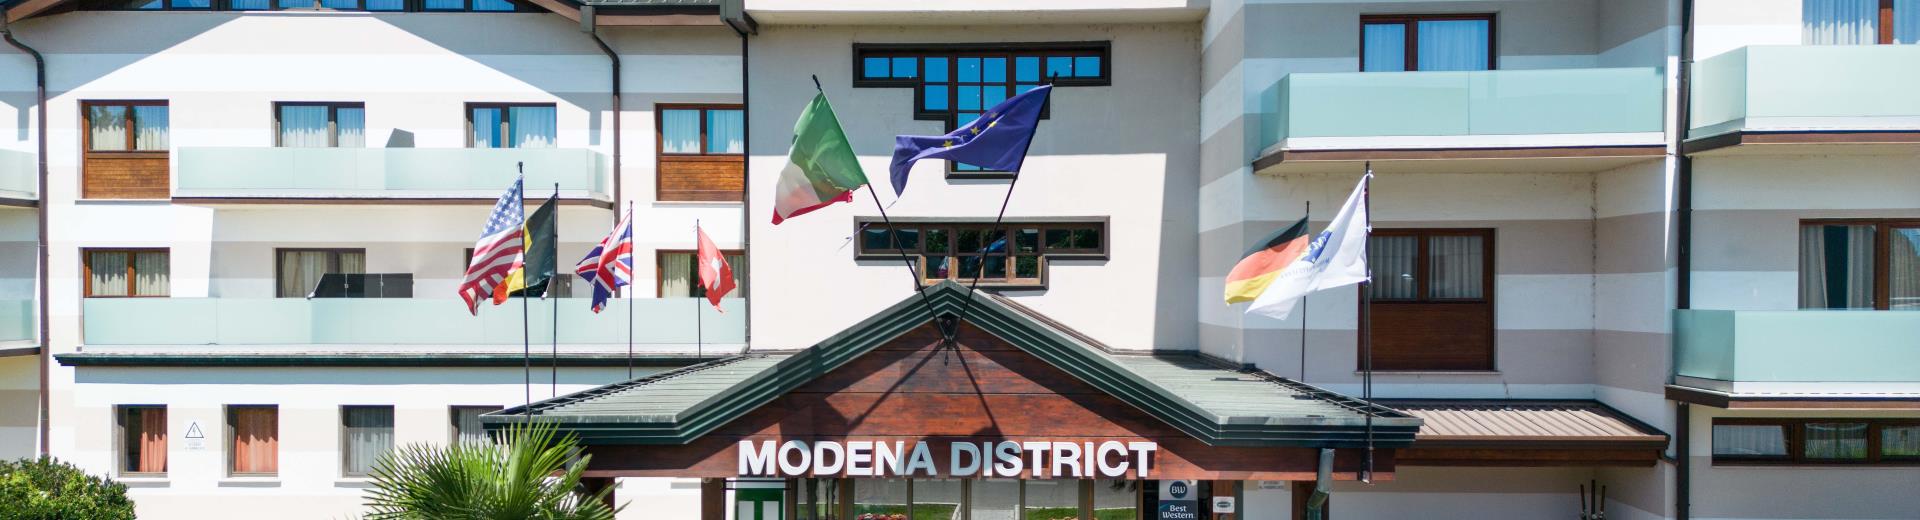 Modena District